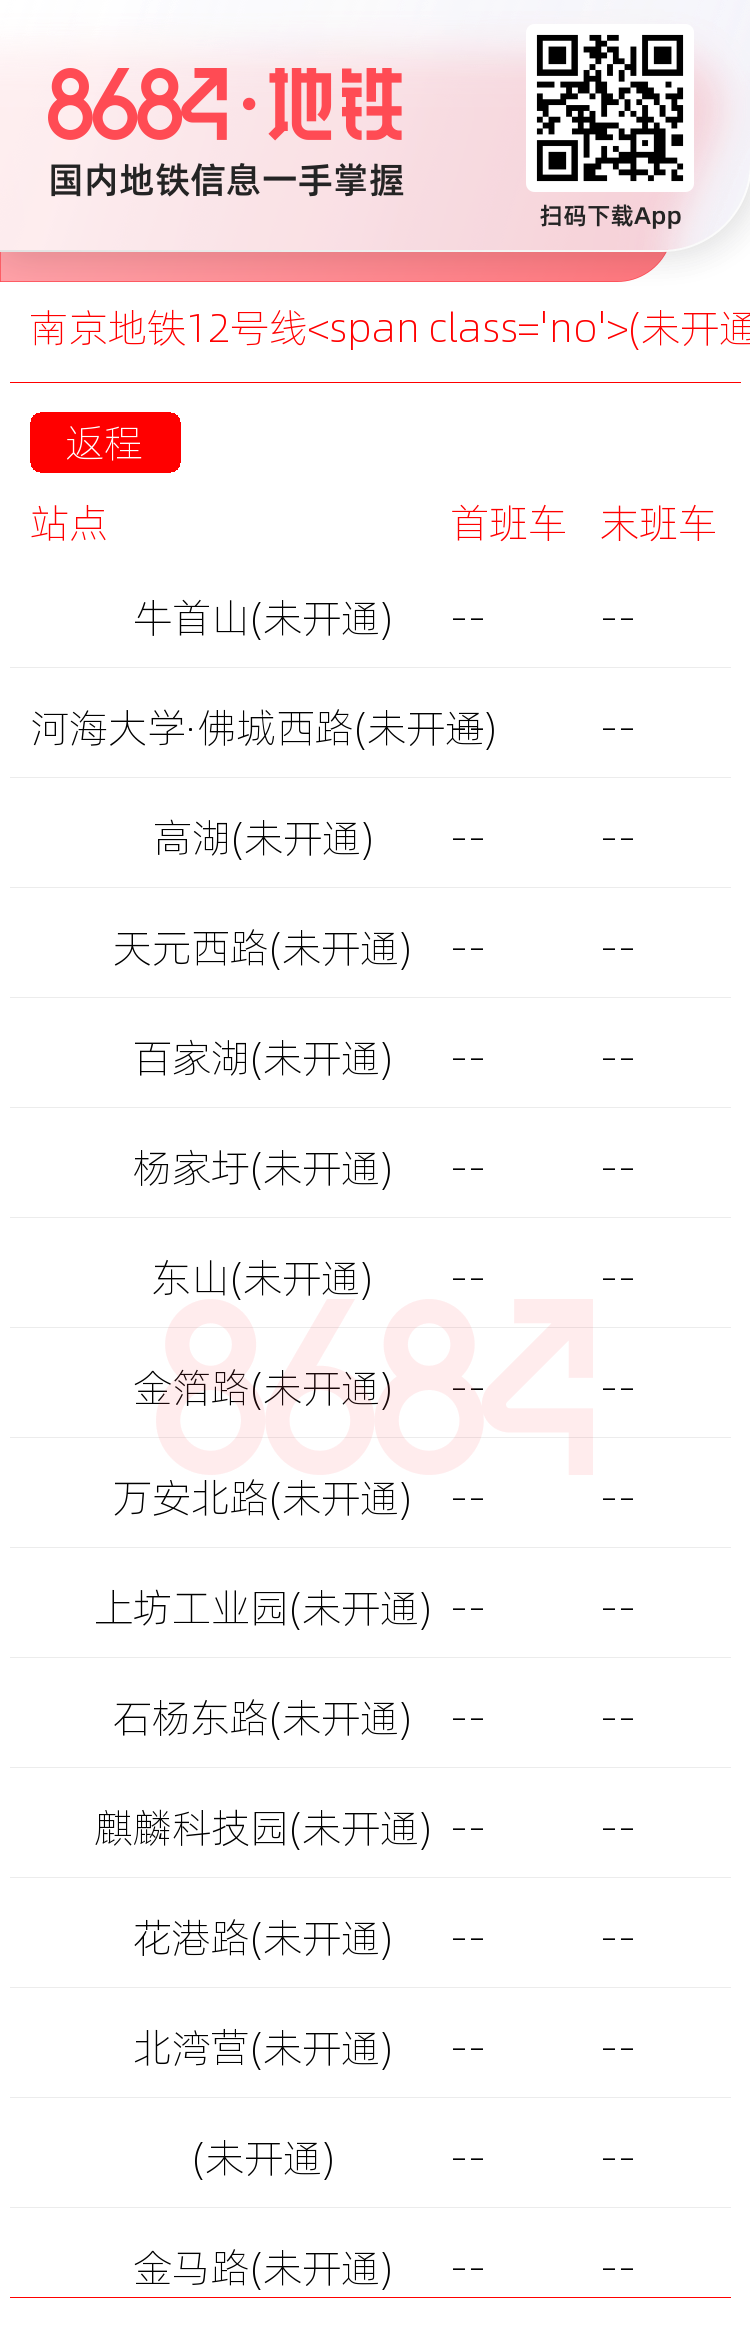 南京地铁12号线<span class='no'>(未开通)</span>运营时间表